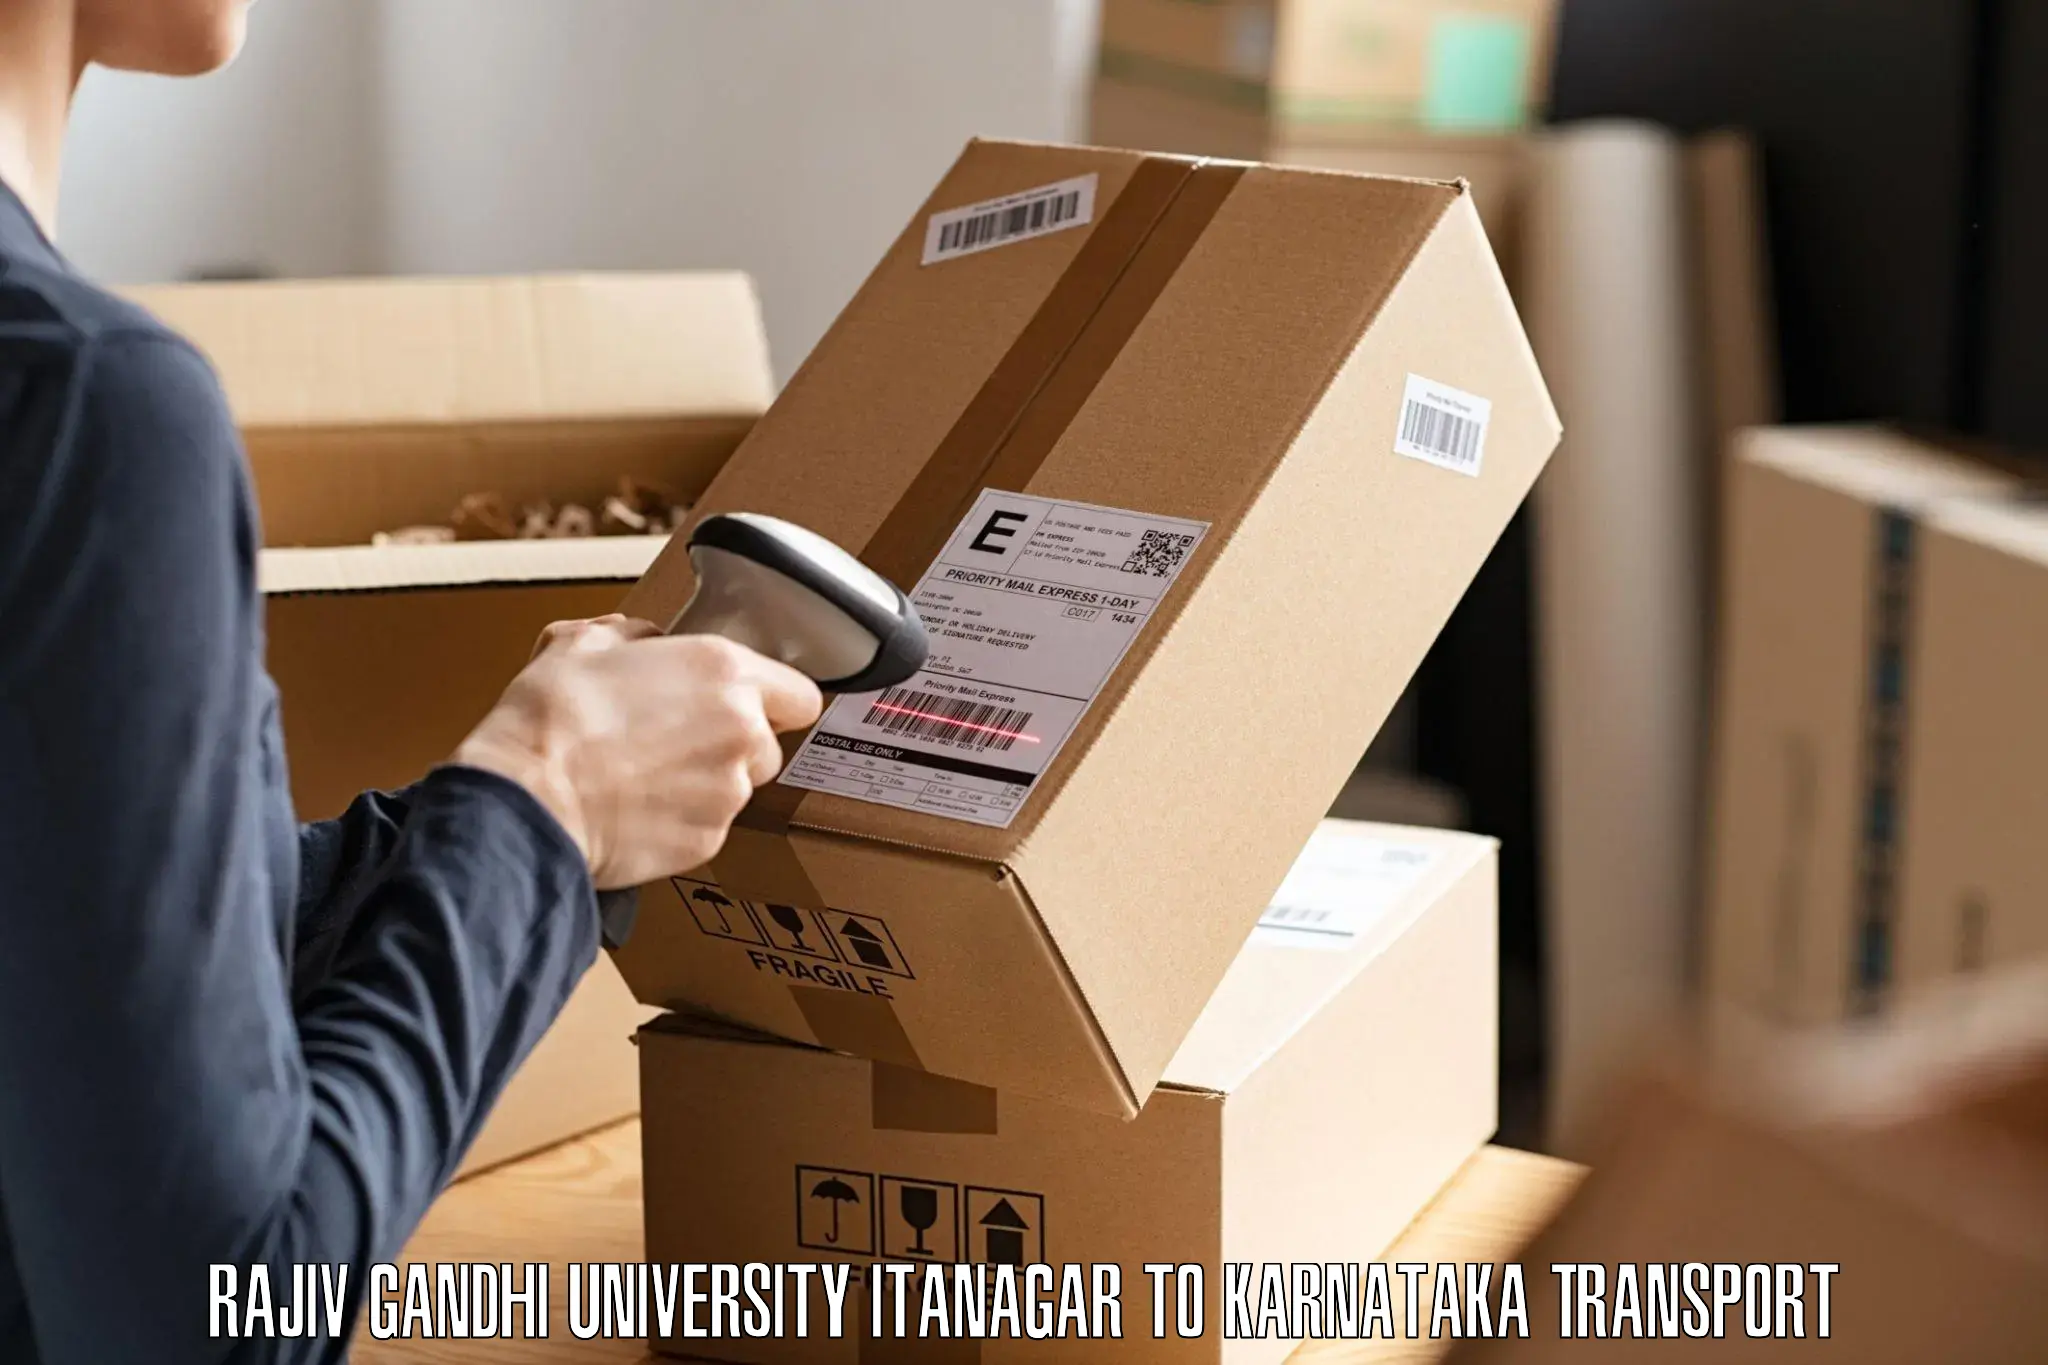 International cargo transportation services in Rajiv Gandhi University Itanagar to Mangalore